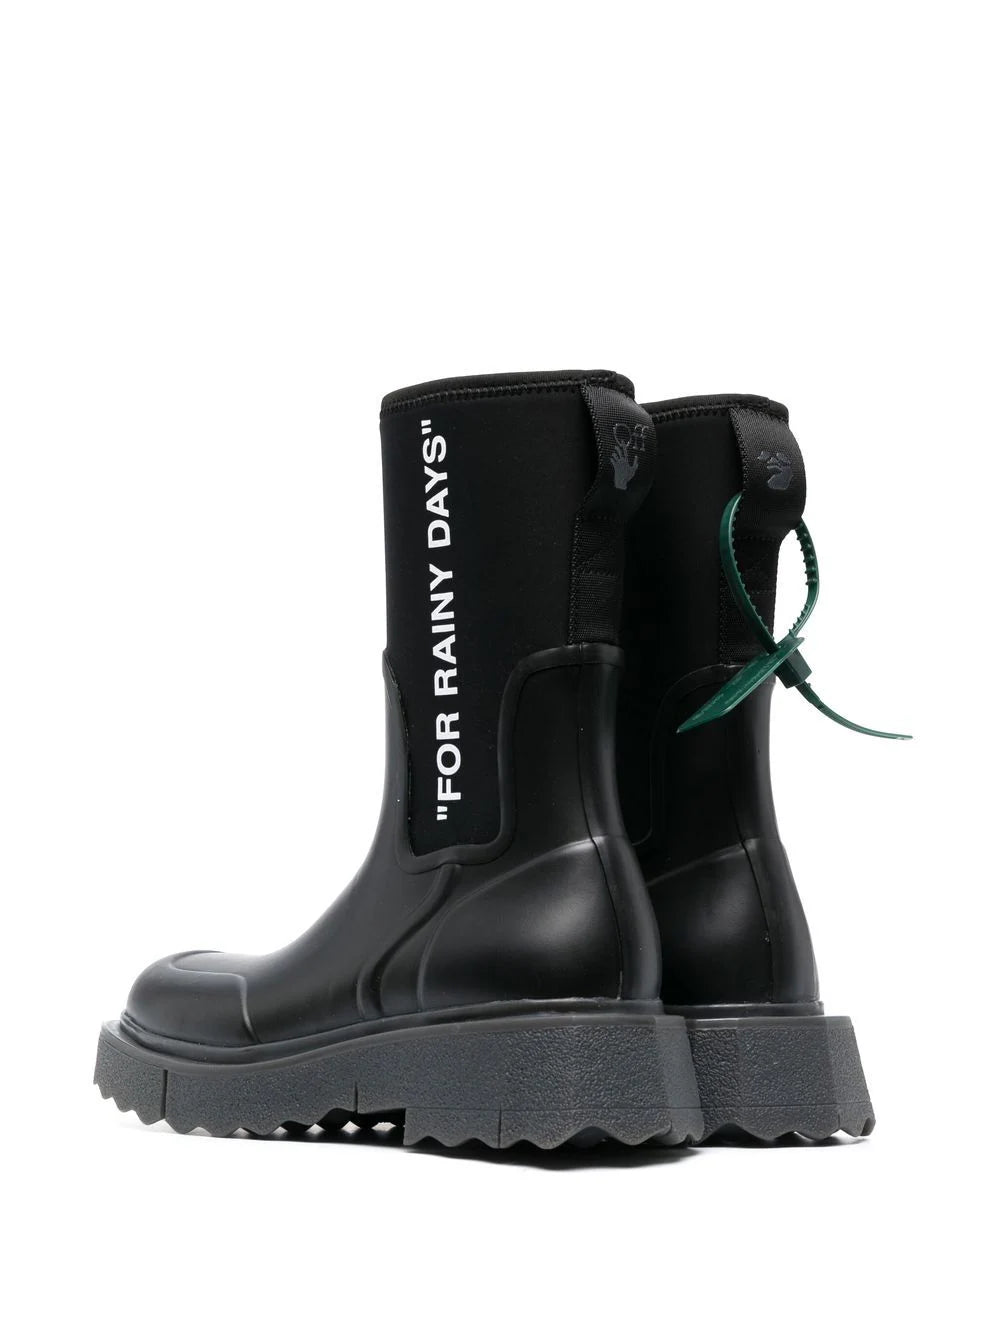 OFF-WHITE WOMEN Sponge Rubber Rain Boots Black/White - MAISONDEFASHION.COM